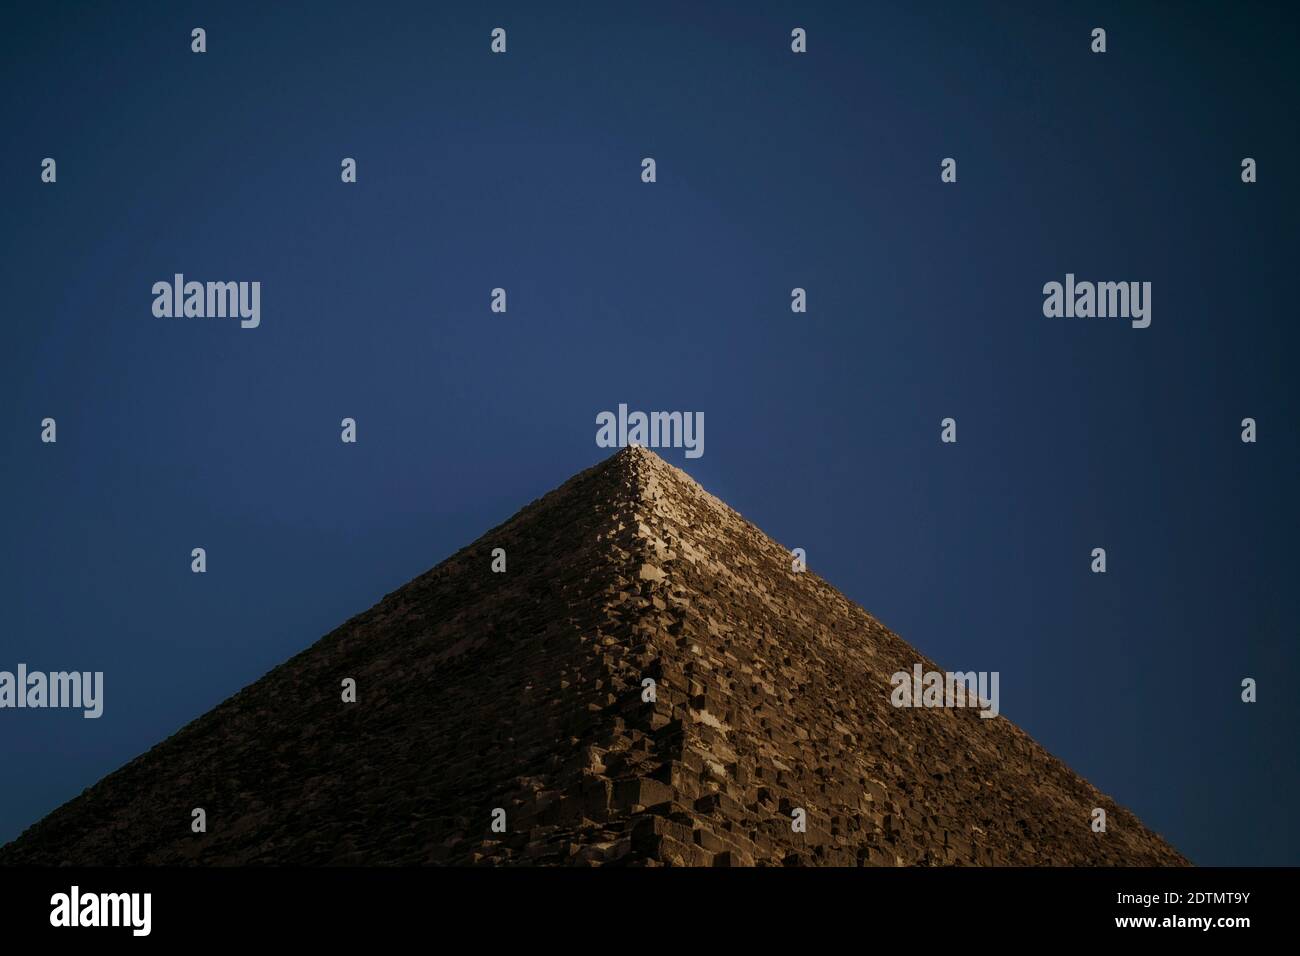 Giza Pyramids, Egypt Stock Photo